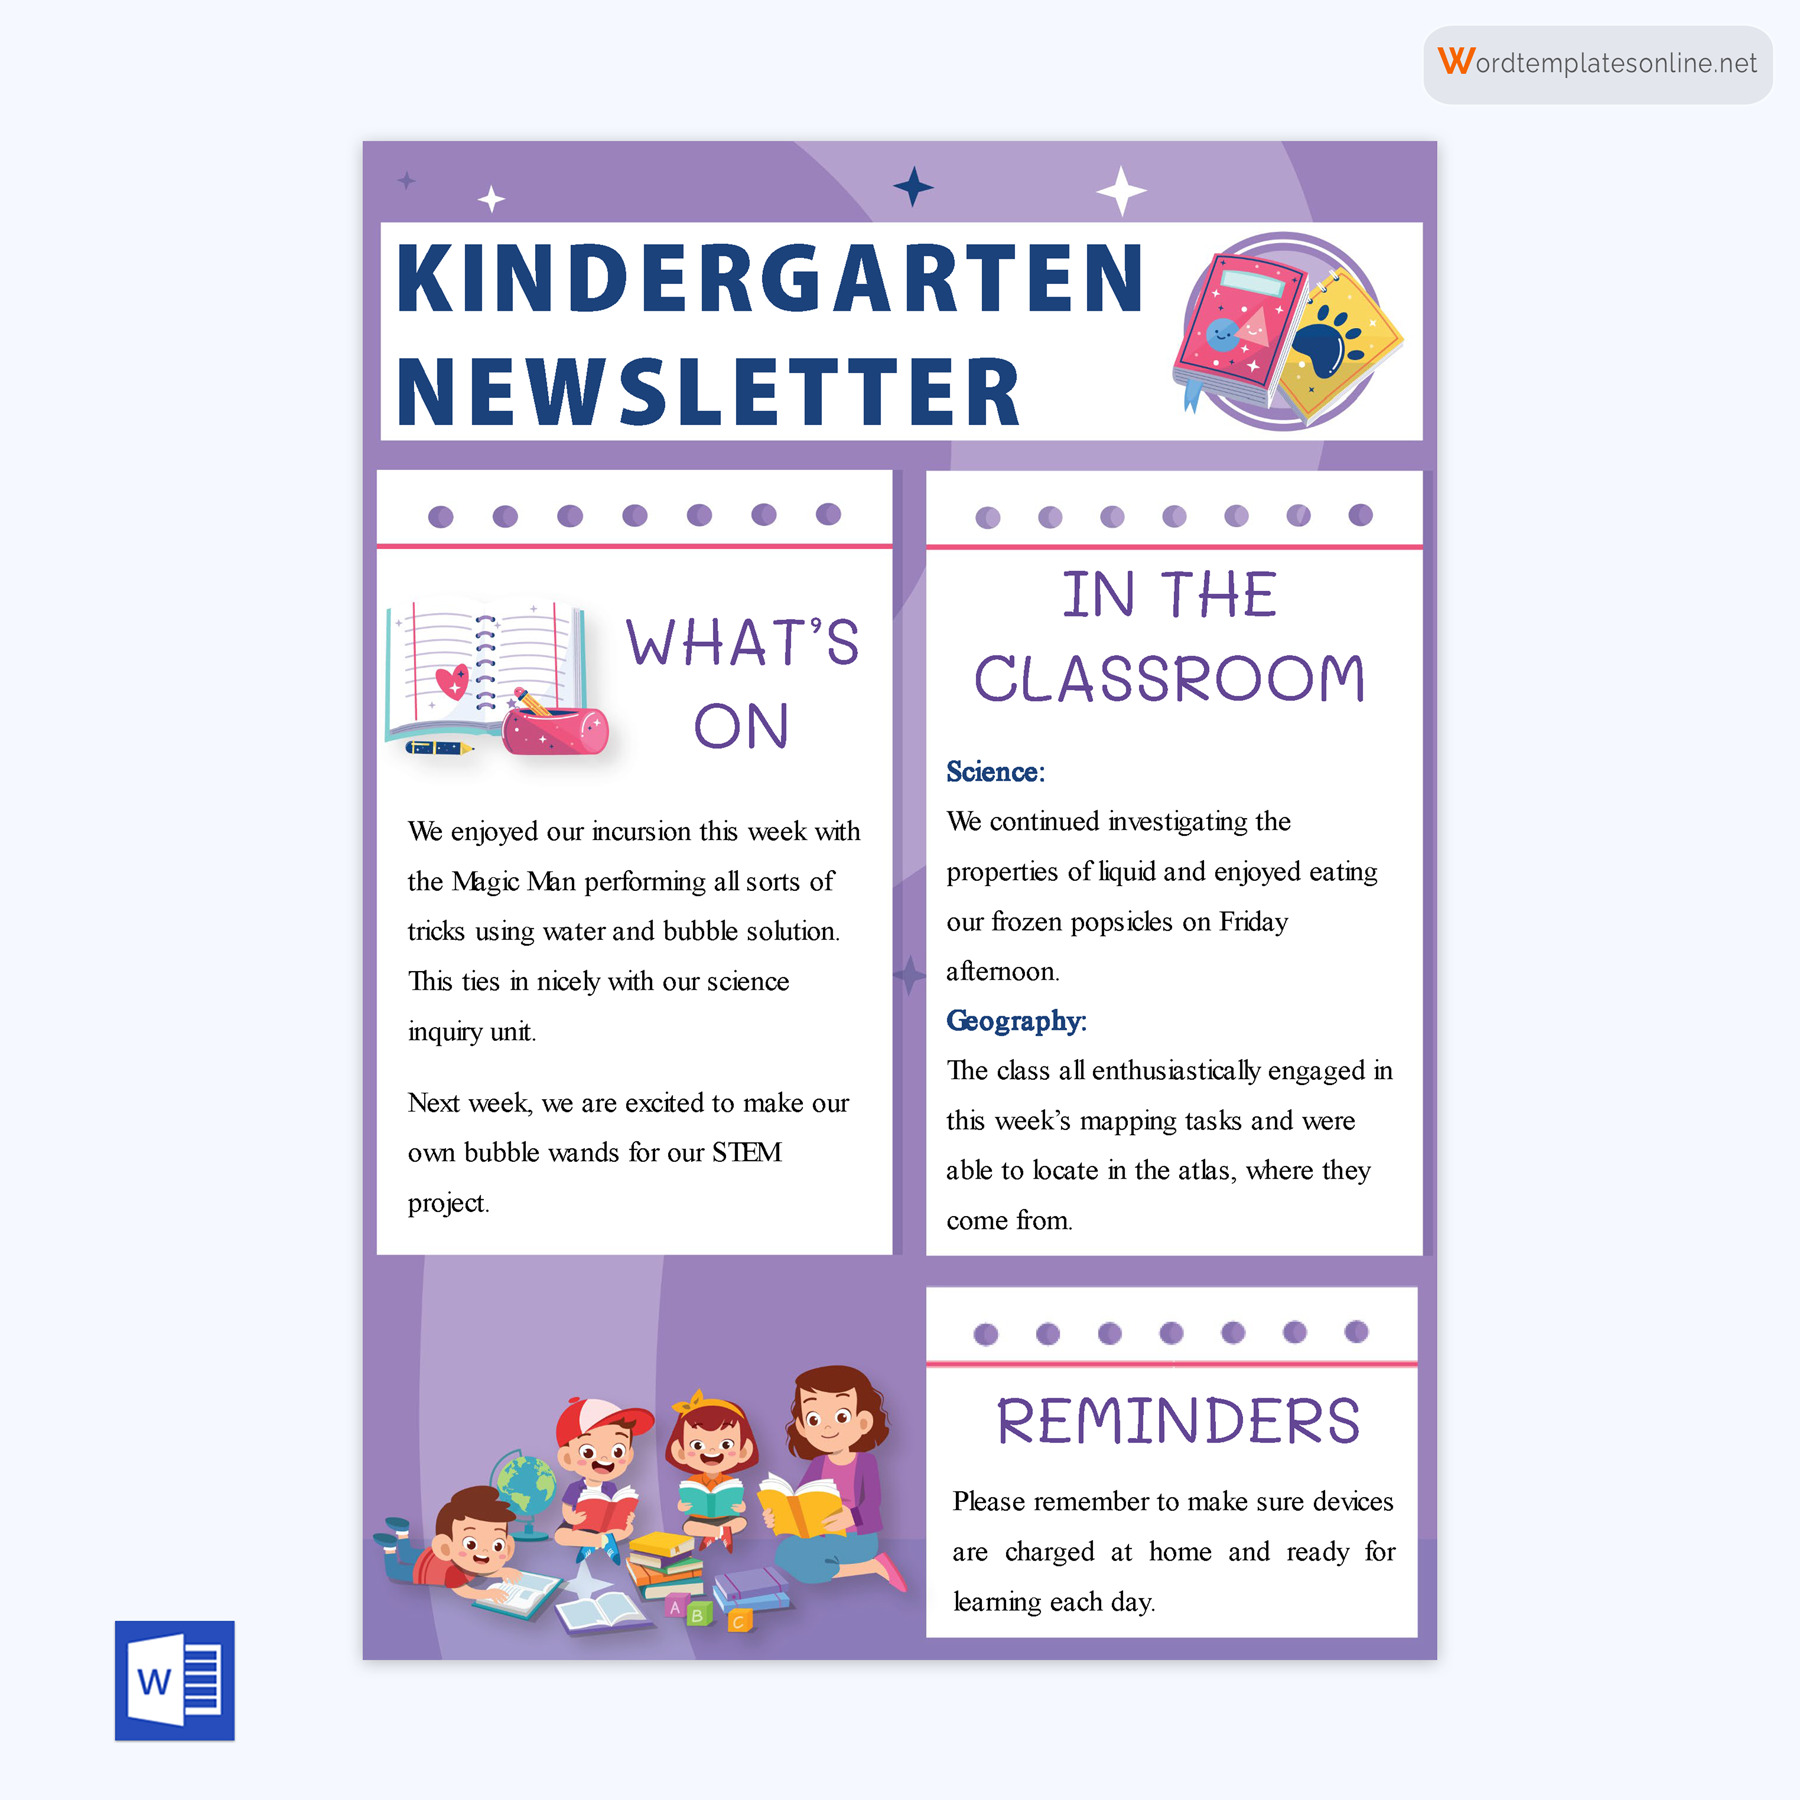 Kindergarten Newsletter Design Sample